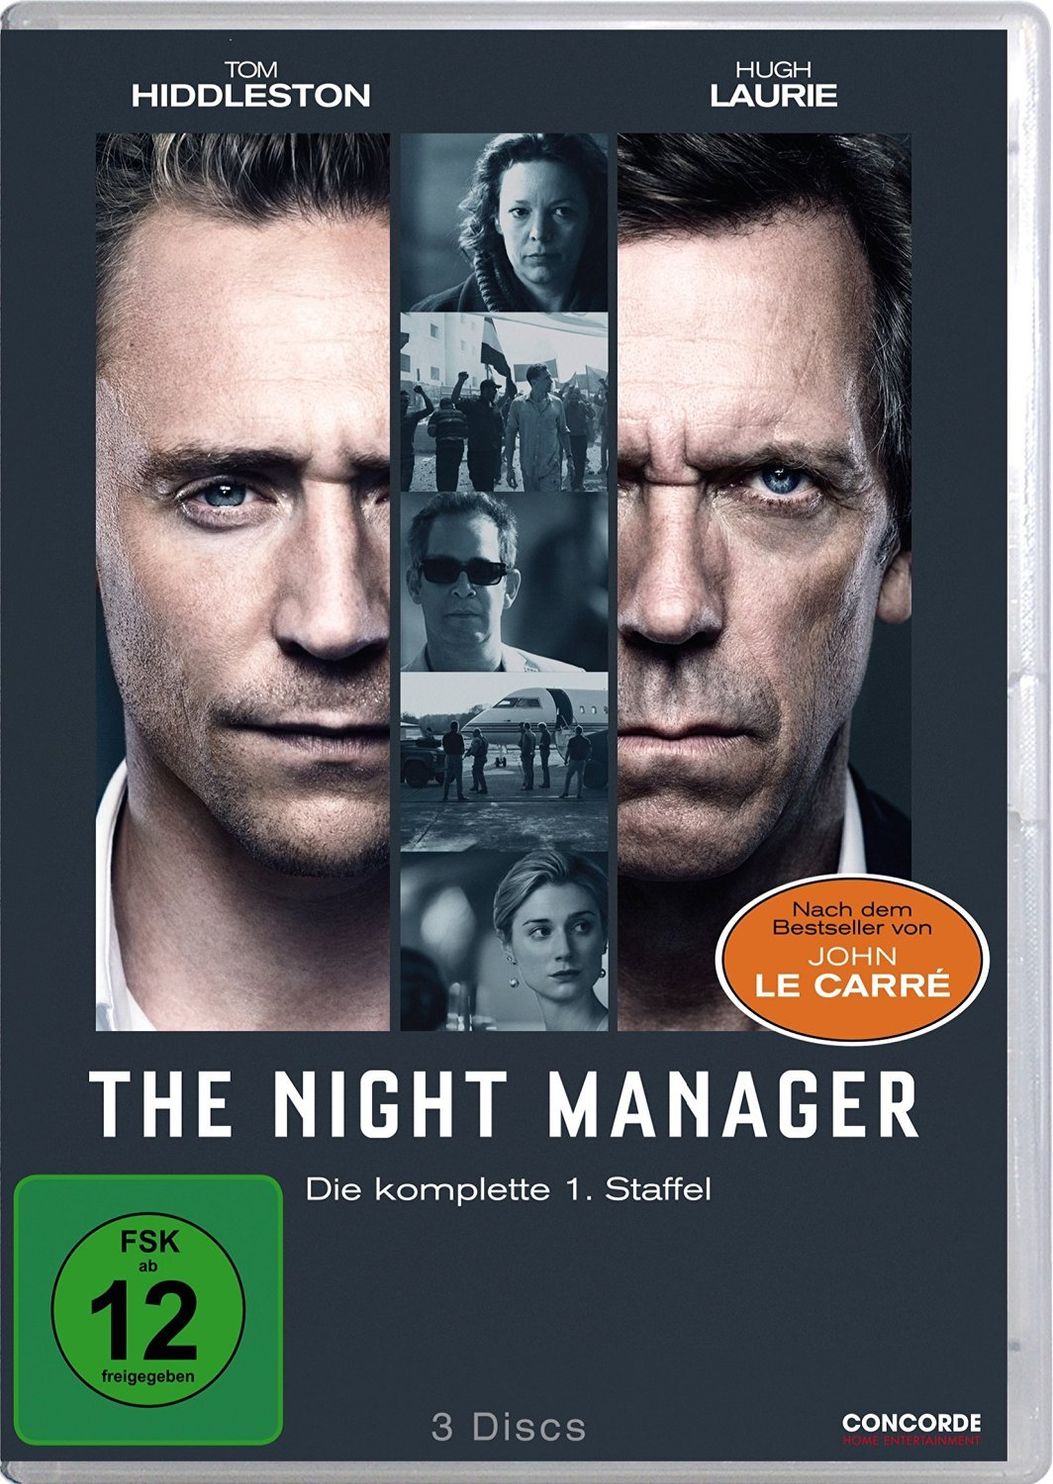 The Night Manager - Staffel 1 DVD bei Weltbild.de bestellen